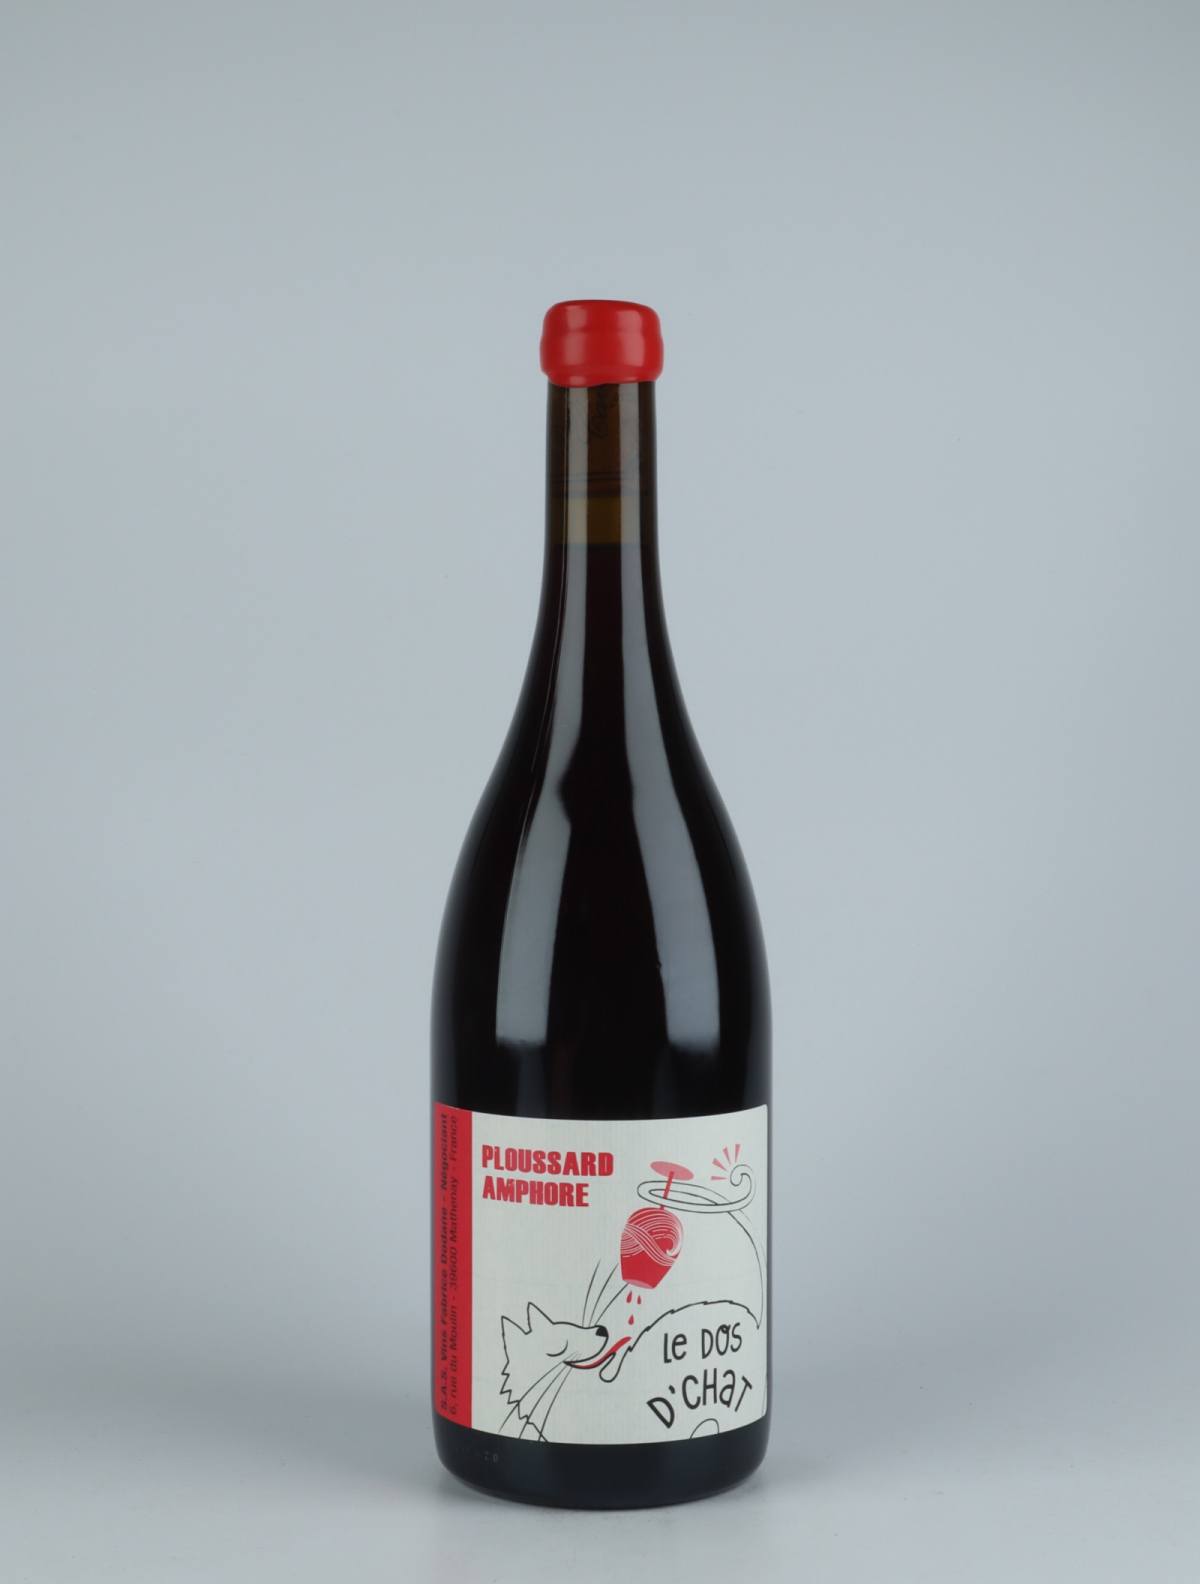 En flaske 2020 Côtes du Jura Rouge - Ploussard Amphore Rødvin fra Fabrice Dodane, Jura i Frankrig